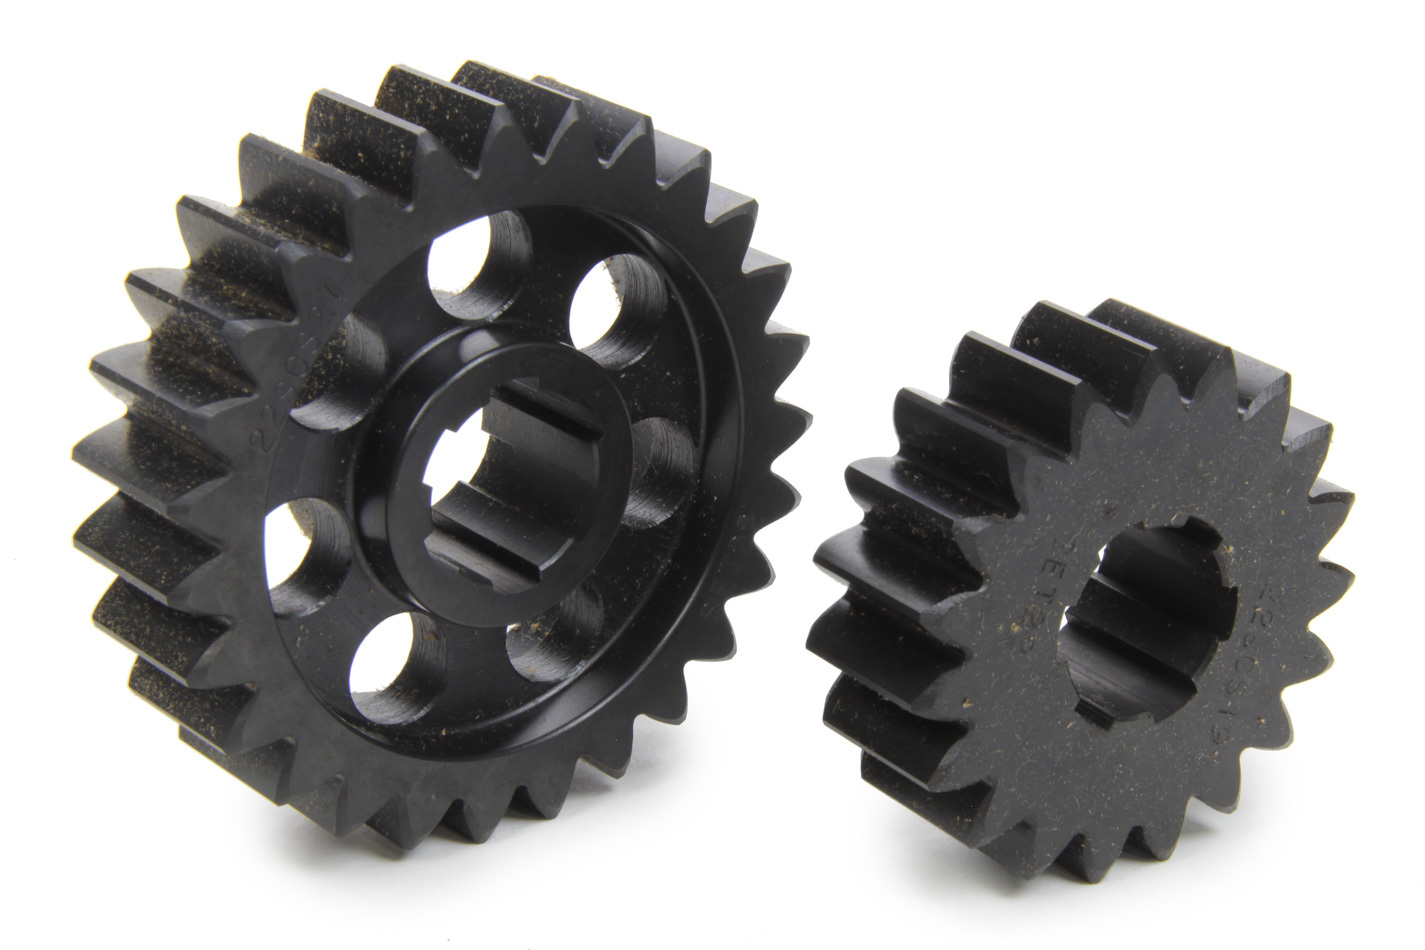 SCS Gears 622 - Quick Change Gear Set, Professional, Set 622, 6 Spline, 4.11 Ratio 2.89 / 5.84, 4.33 Ratio 3.05 / 6.15, Steel, Each